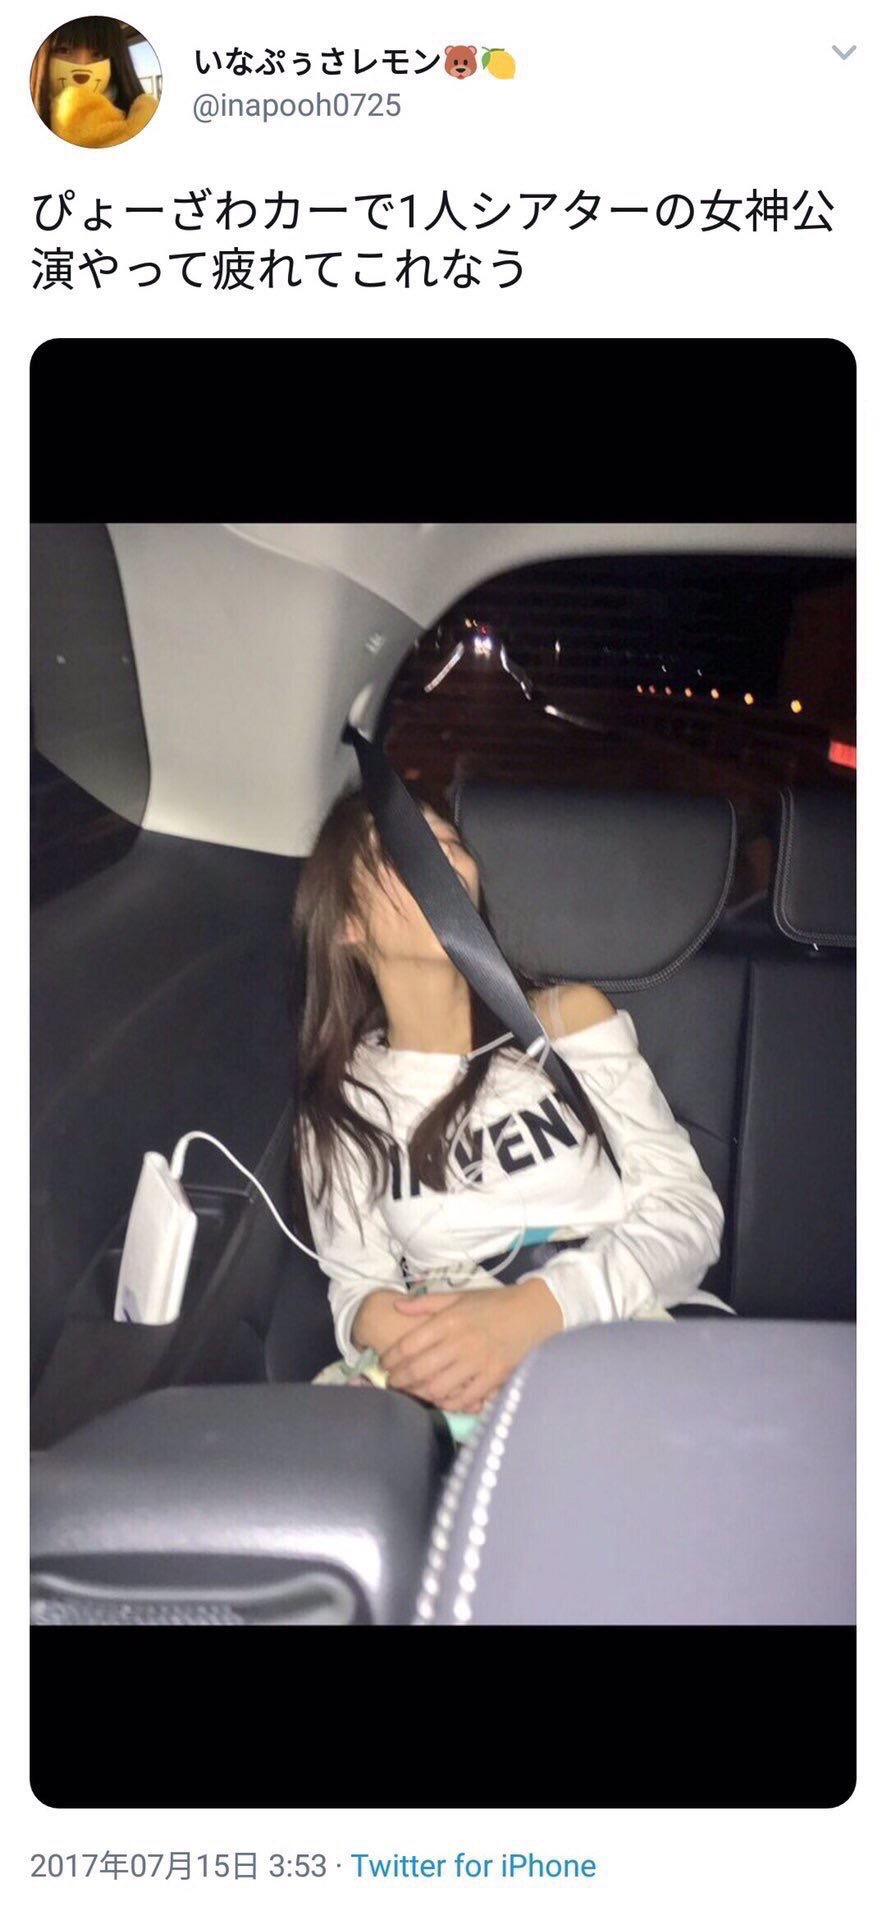 藤田奈那が車内で寝ている画像がツイートされた